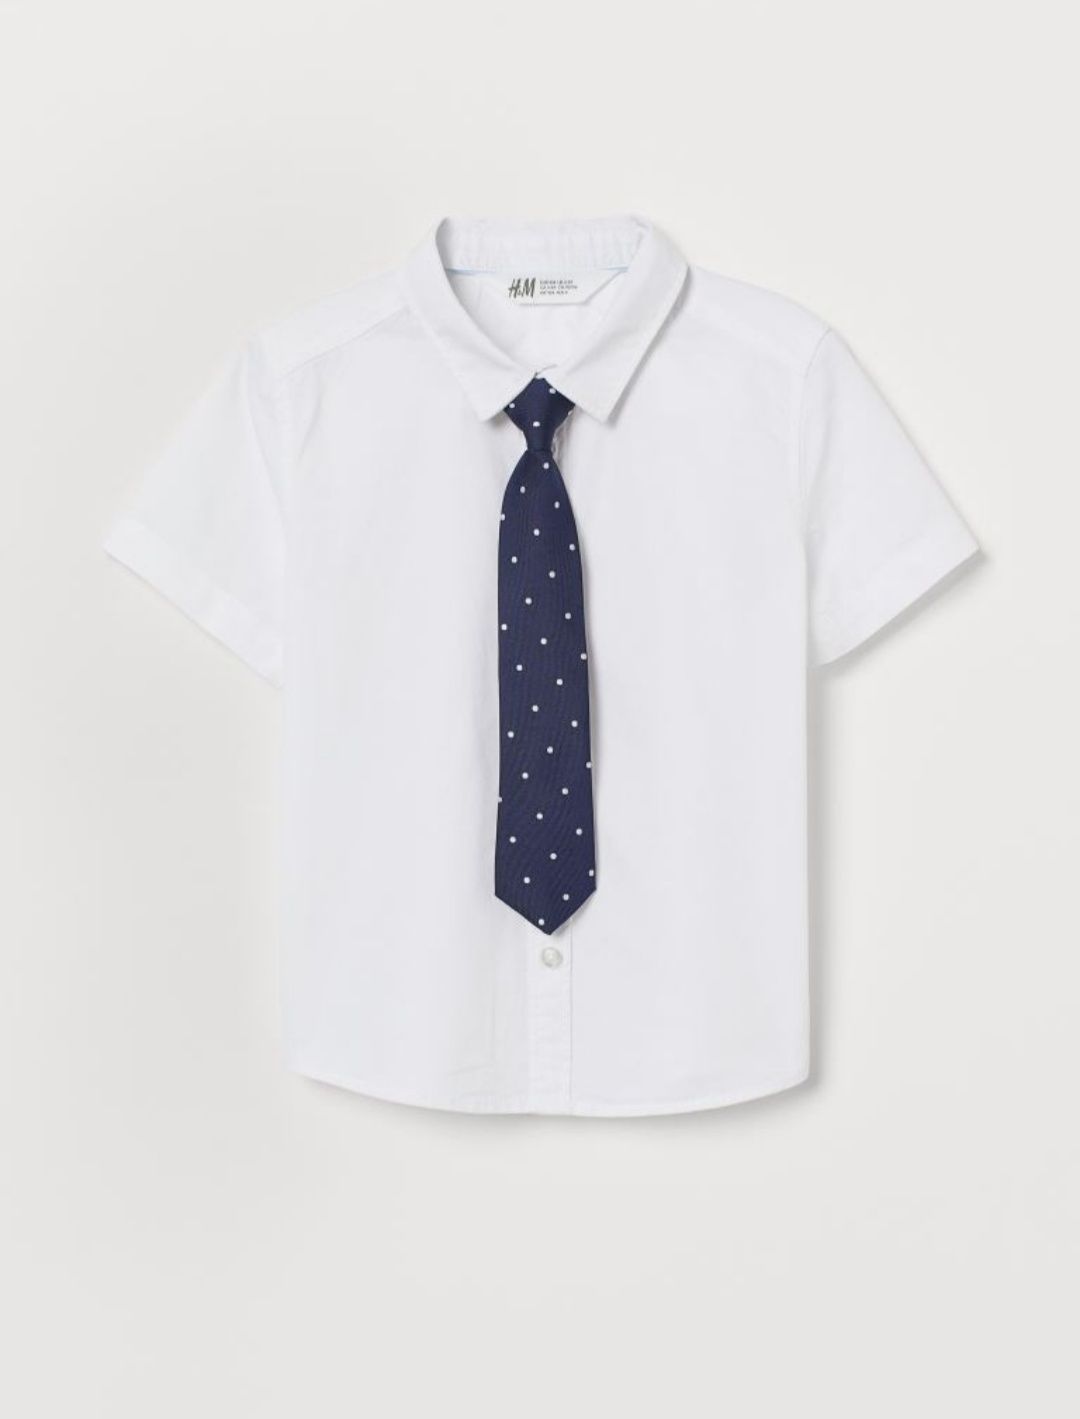 Рубашка с галстуком для мальчиков от бренда H&M